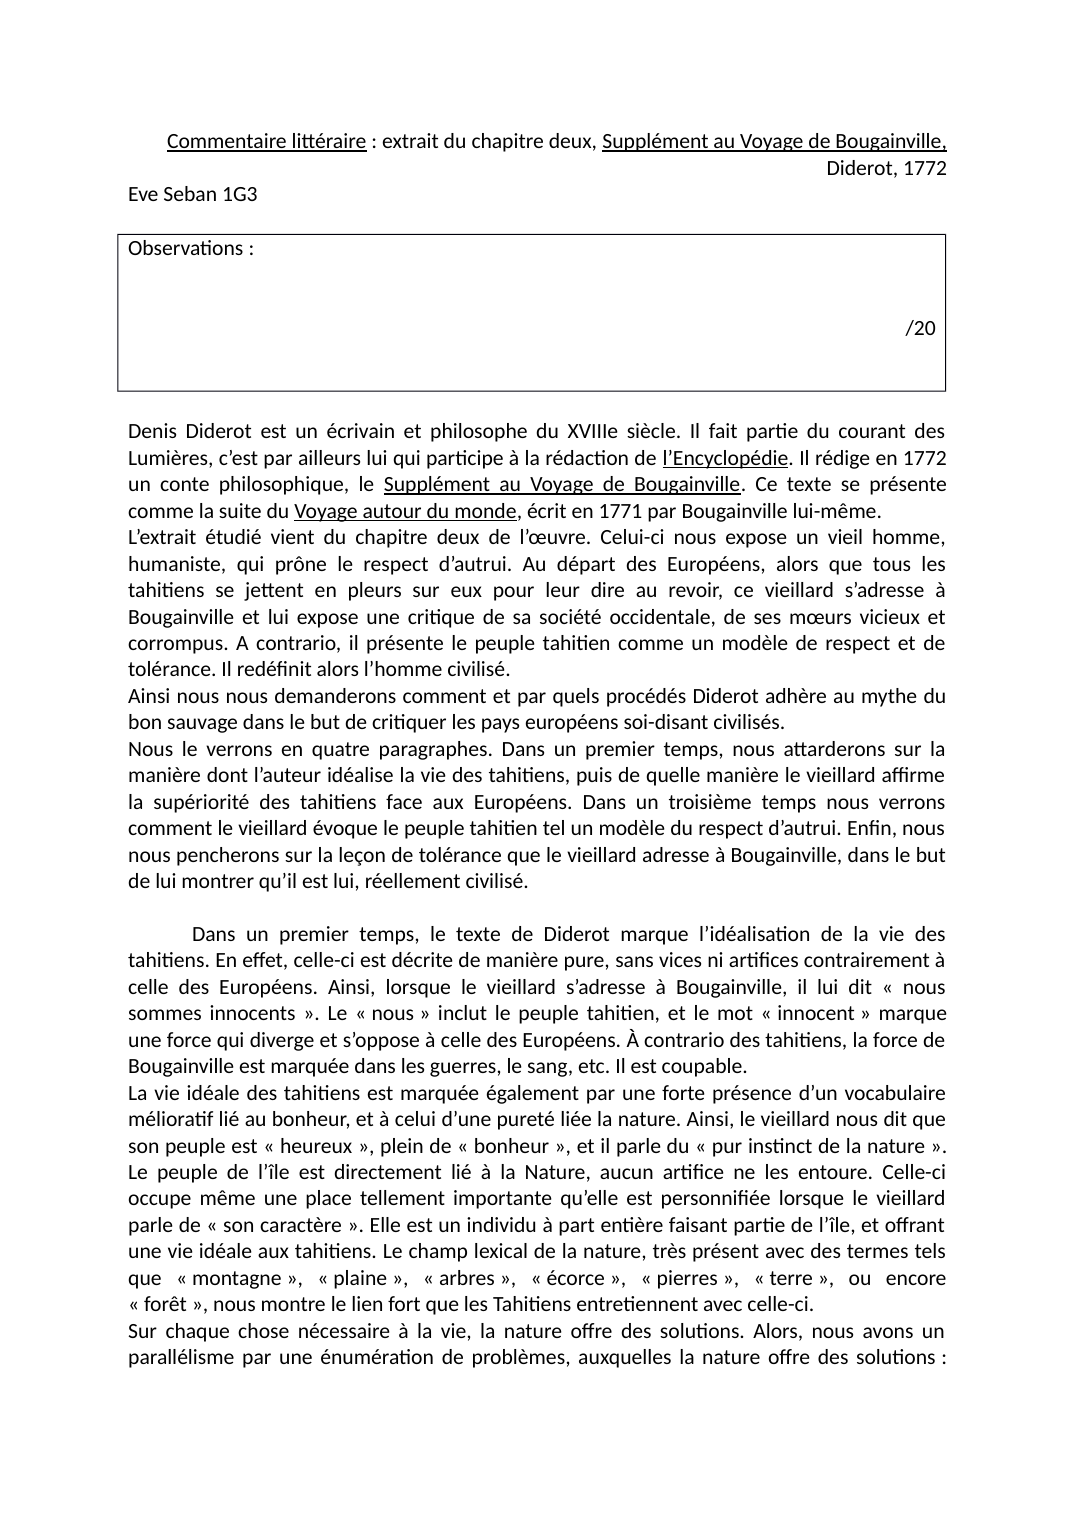 Prévisualisation du document commentaire littéraire Chap 2, Supplément au voyage de bougainville, Diderot